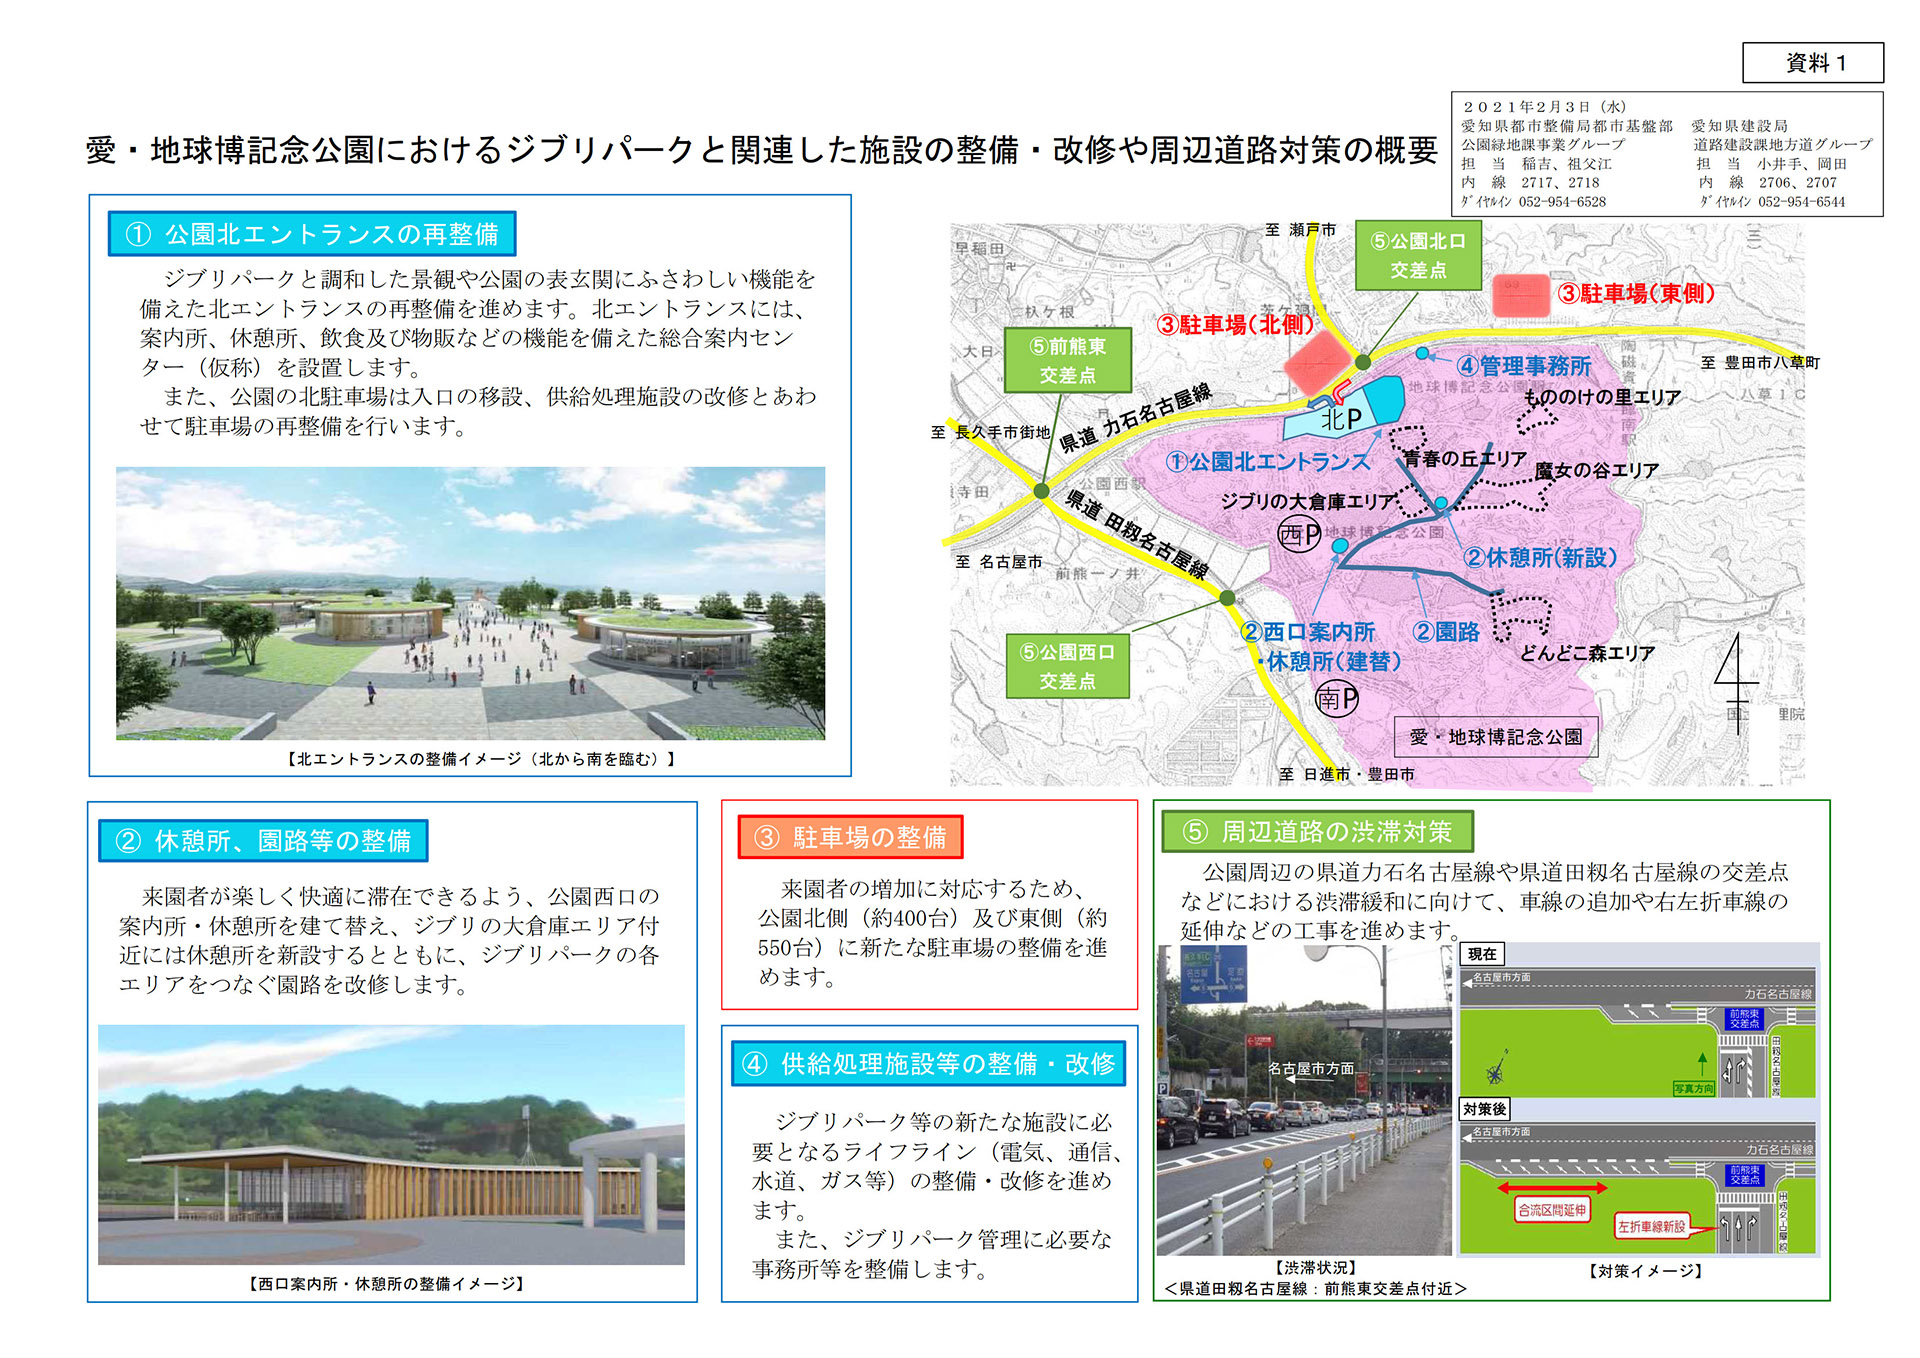 愛知県、ジブリパーク開業に向けた2021年度整備計画発表。「サツキと